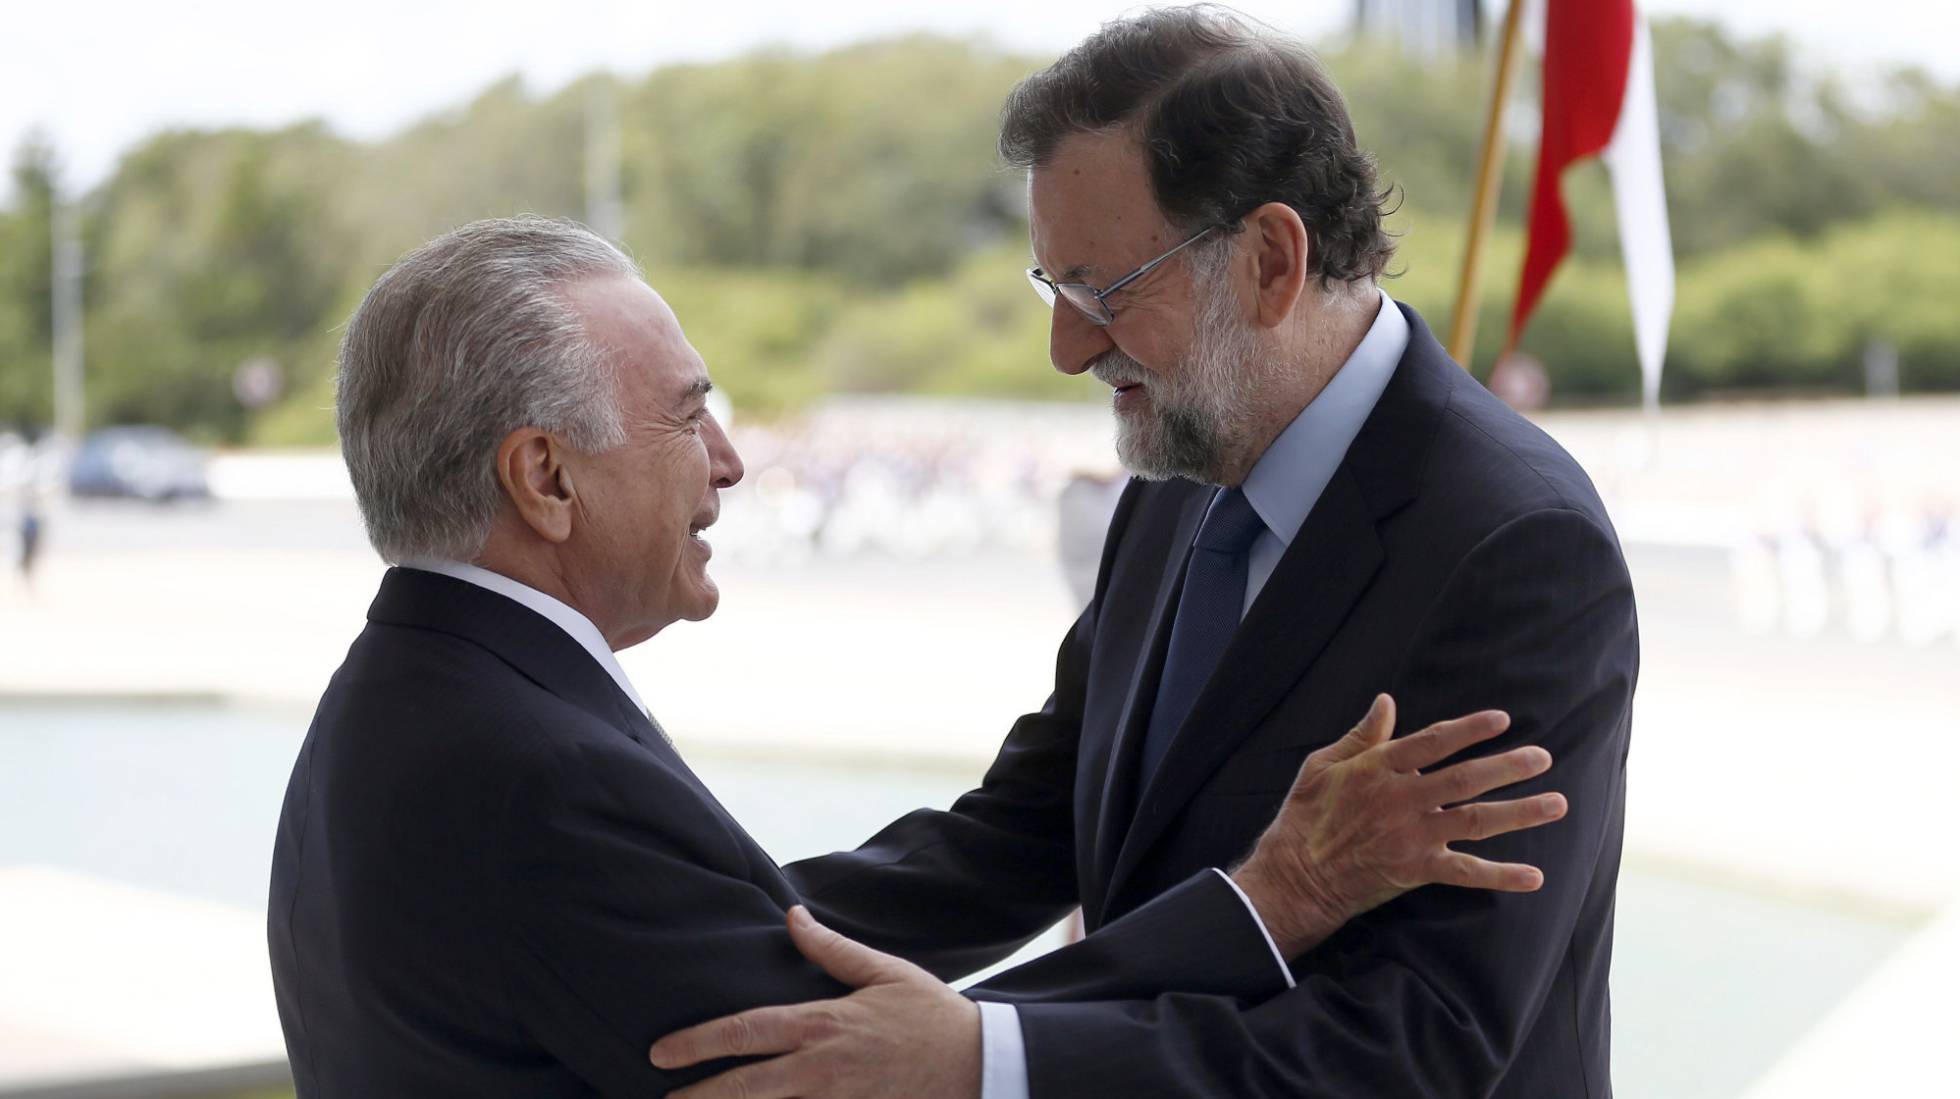 Rajoy y Temer se acercan a un pacto entre la Unión Europea y el Mercosur a la vez que critican a Venezuela